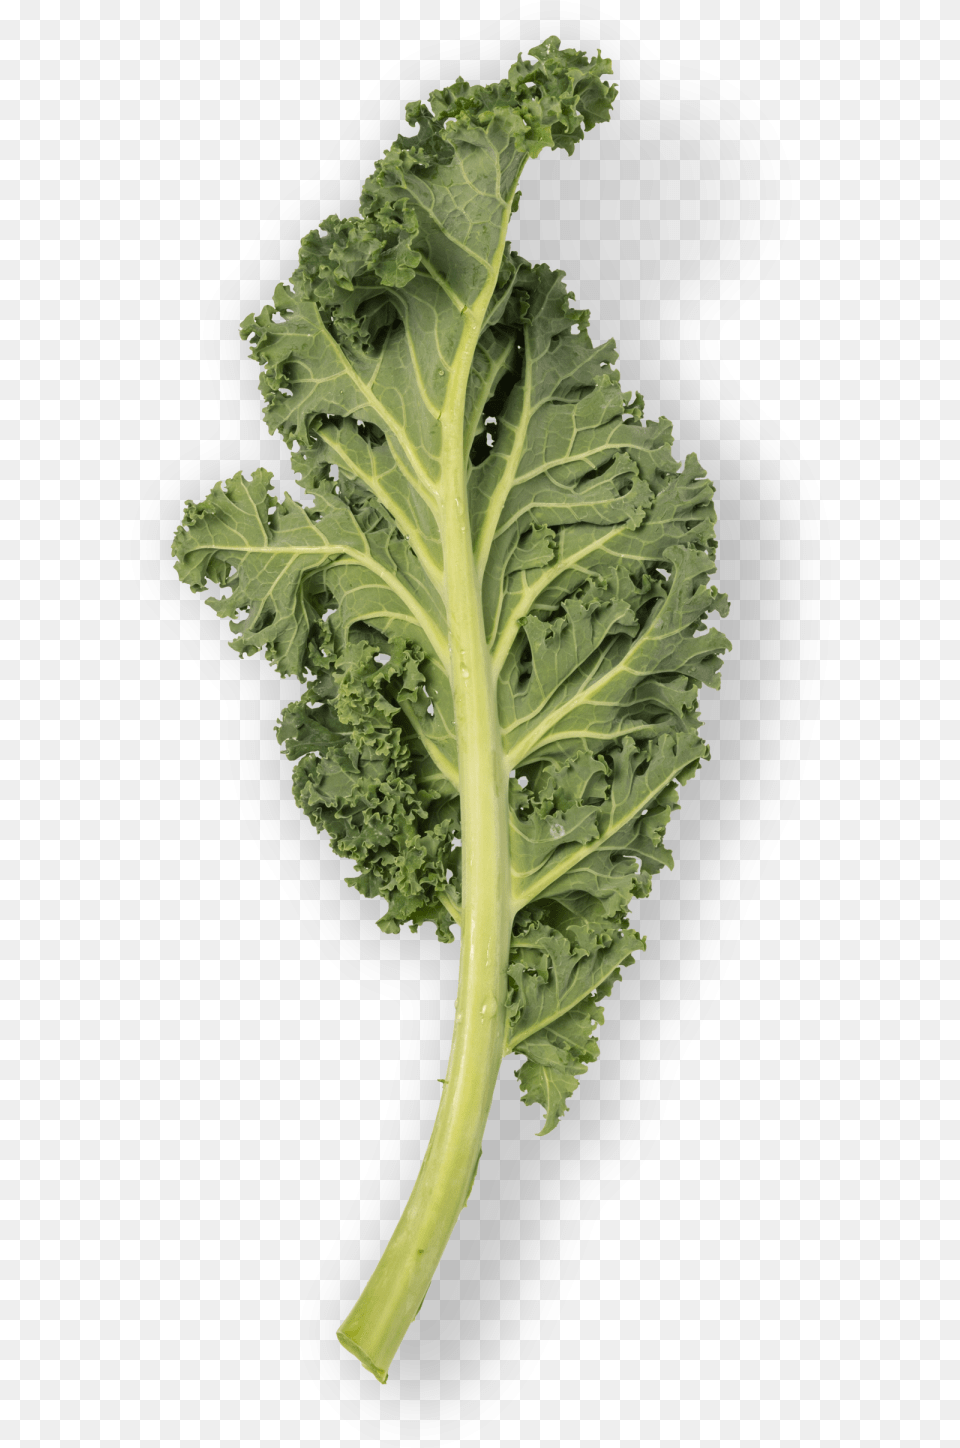 Kale Leaf, Food, Leafy Green Vegetable, Plant, Produce Png Image